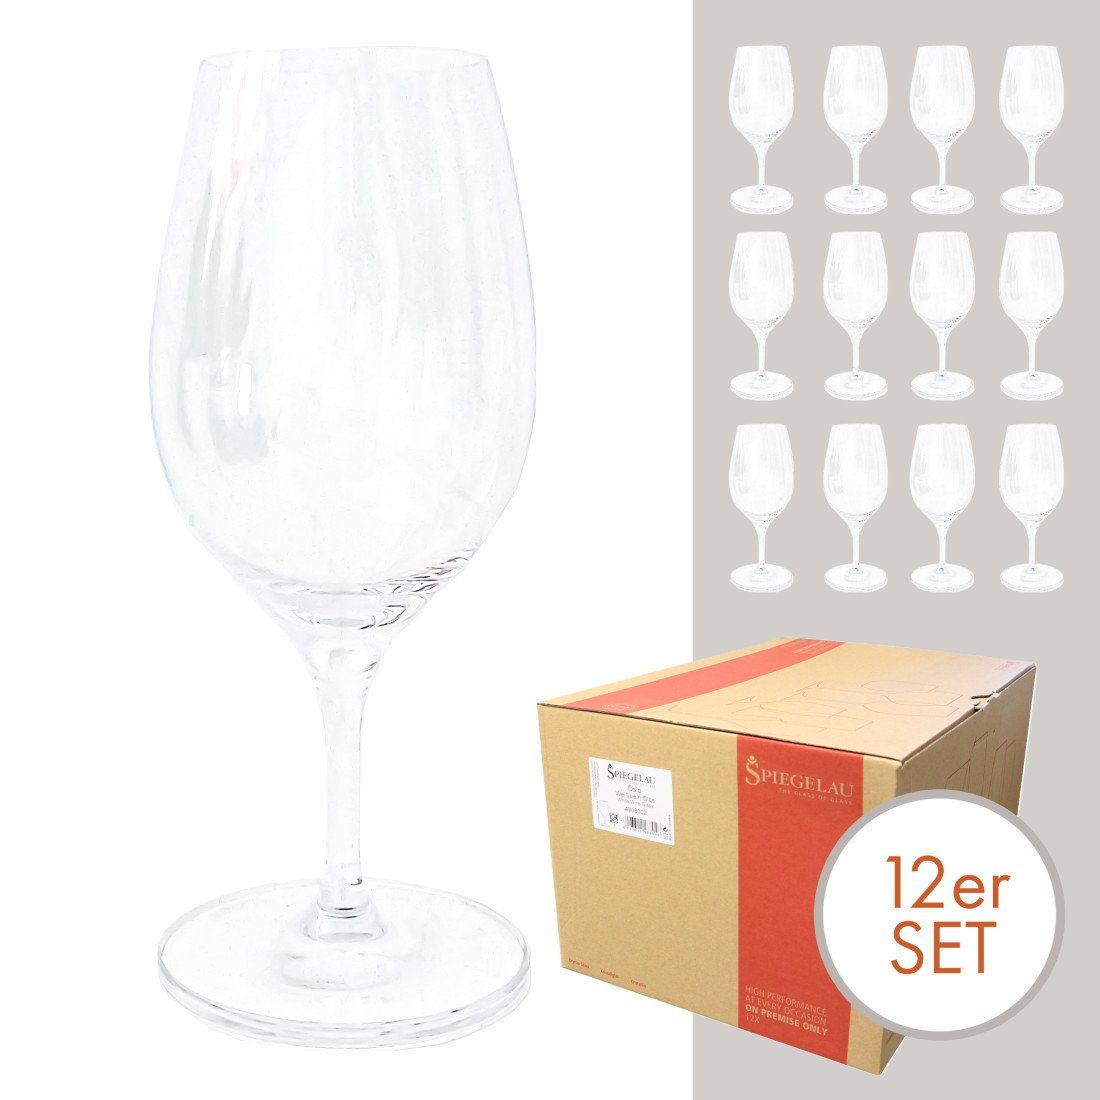 PassionMade Weißweinglas Weißweingläser 12er Set Wein glas Spiegelau, Kristallglas, Spiegelau Weißweingläser 12 Weingläser Set